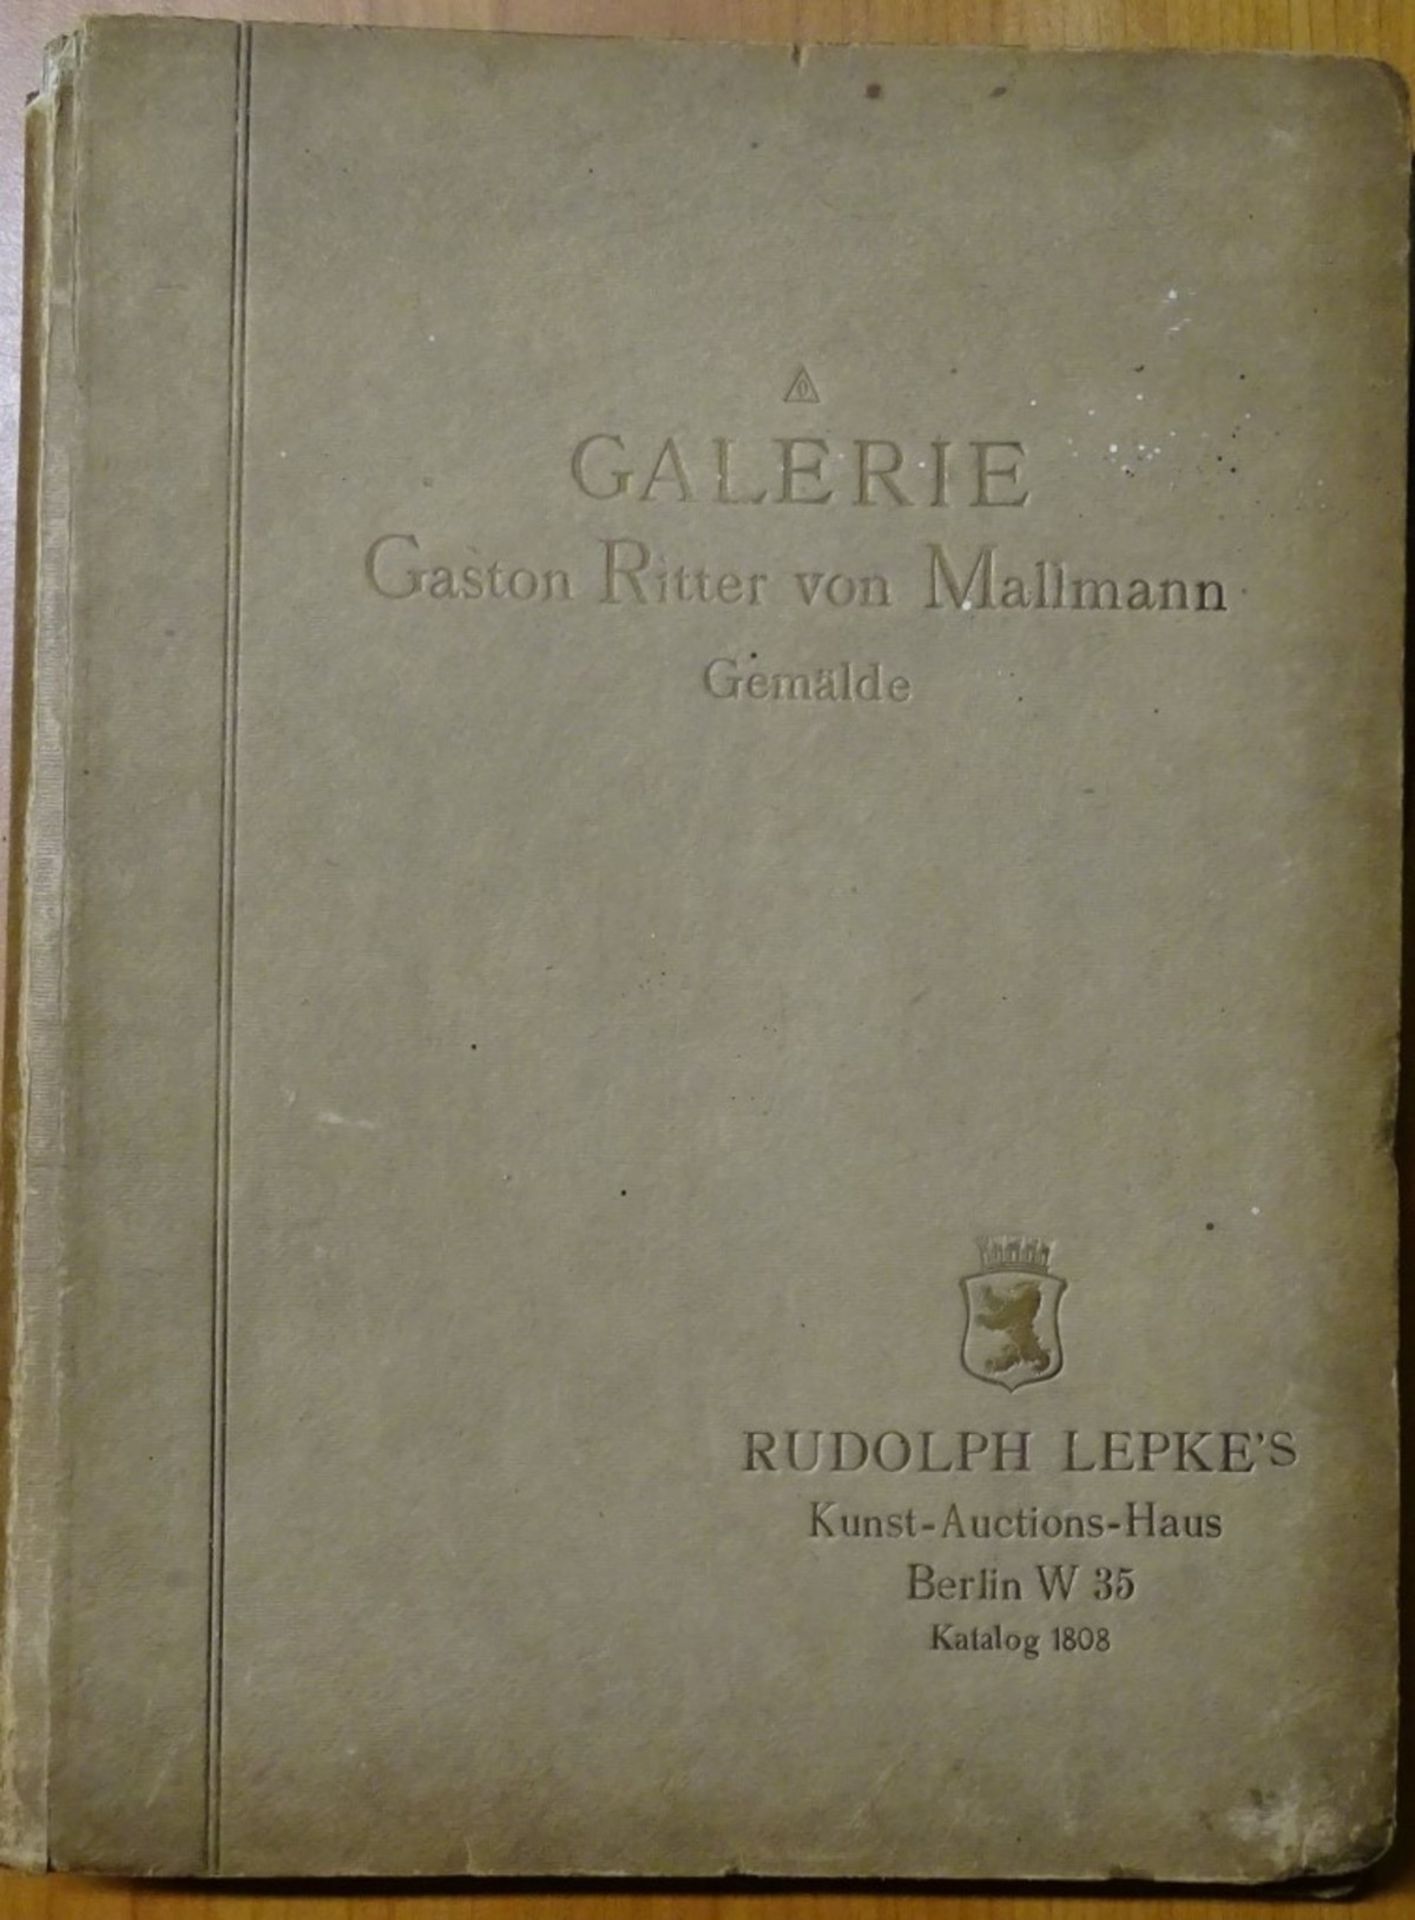 Katalog 1808 mit 81 Tafeln, Galerie Ritter Gaston von Mallmann Berlin, 1.Abt.Gemälde alter Meister